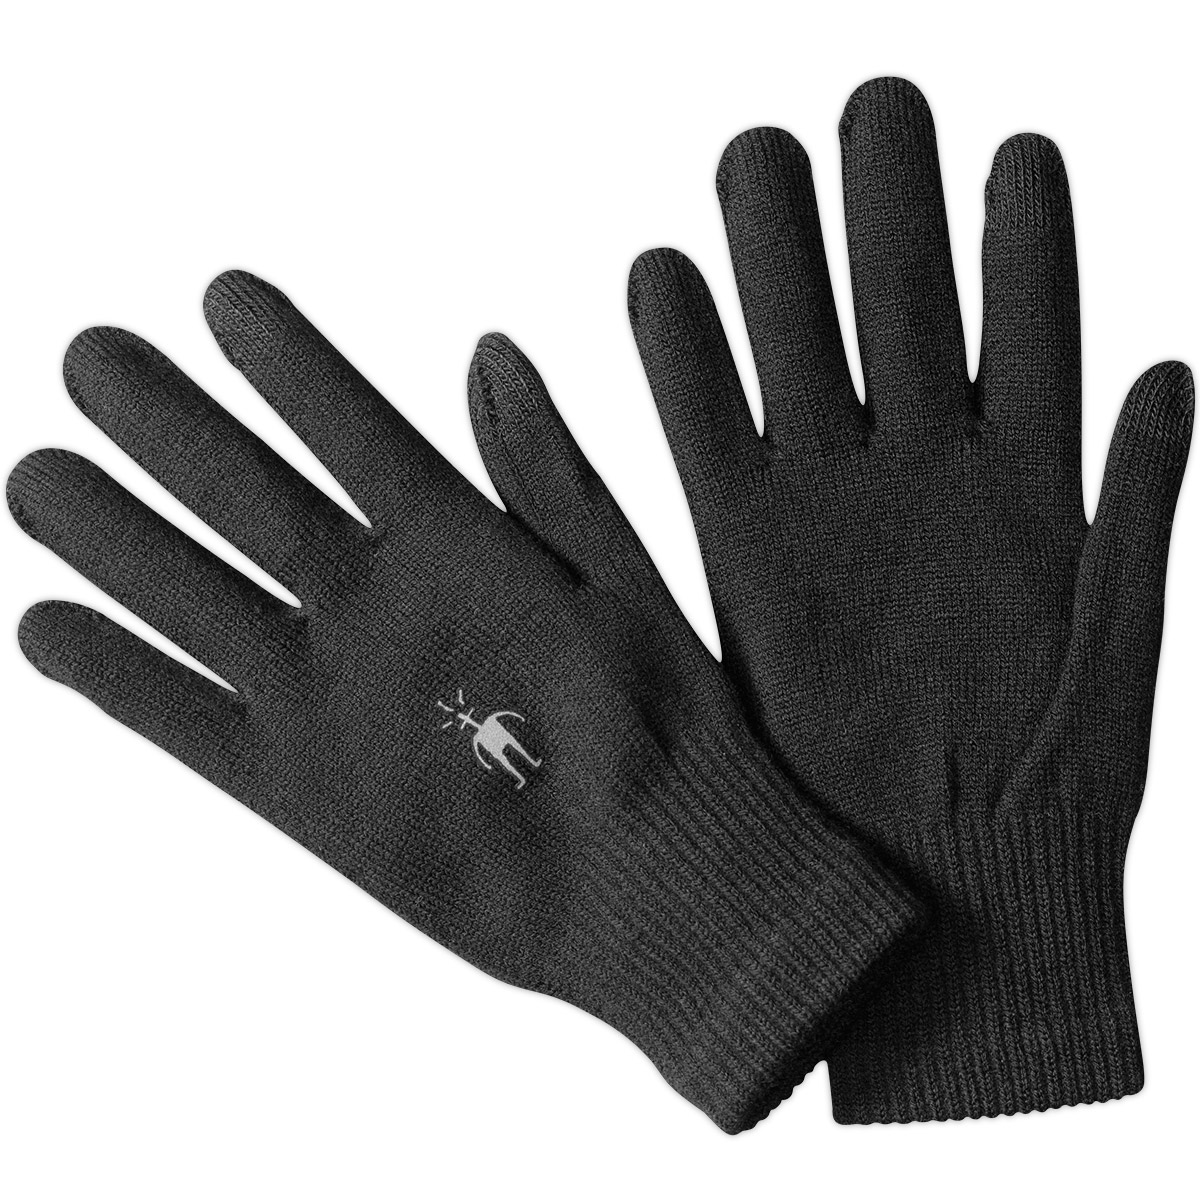 Smartwool Liner Gloves - Black, M